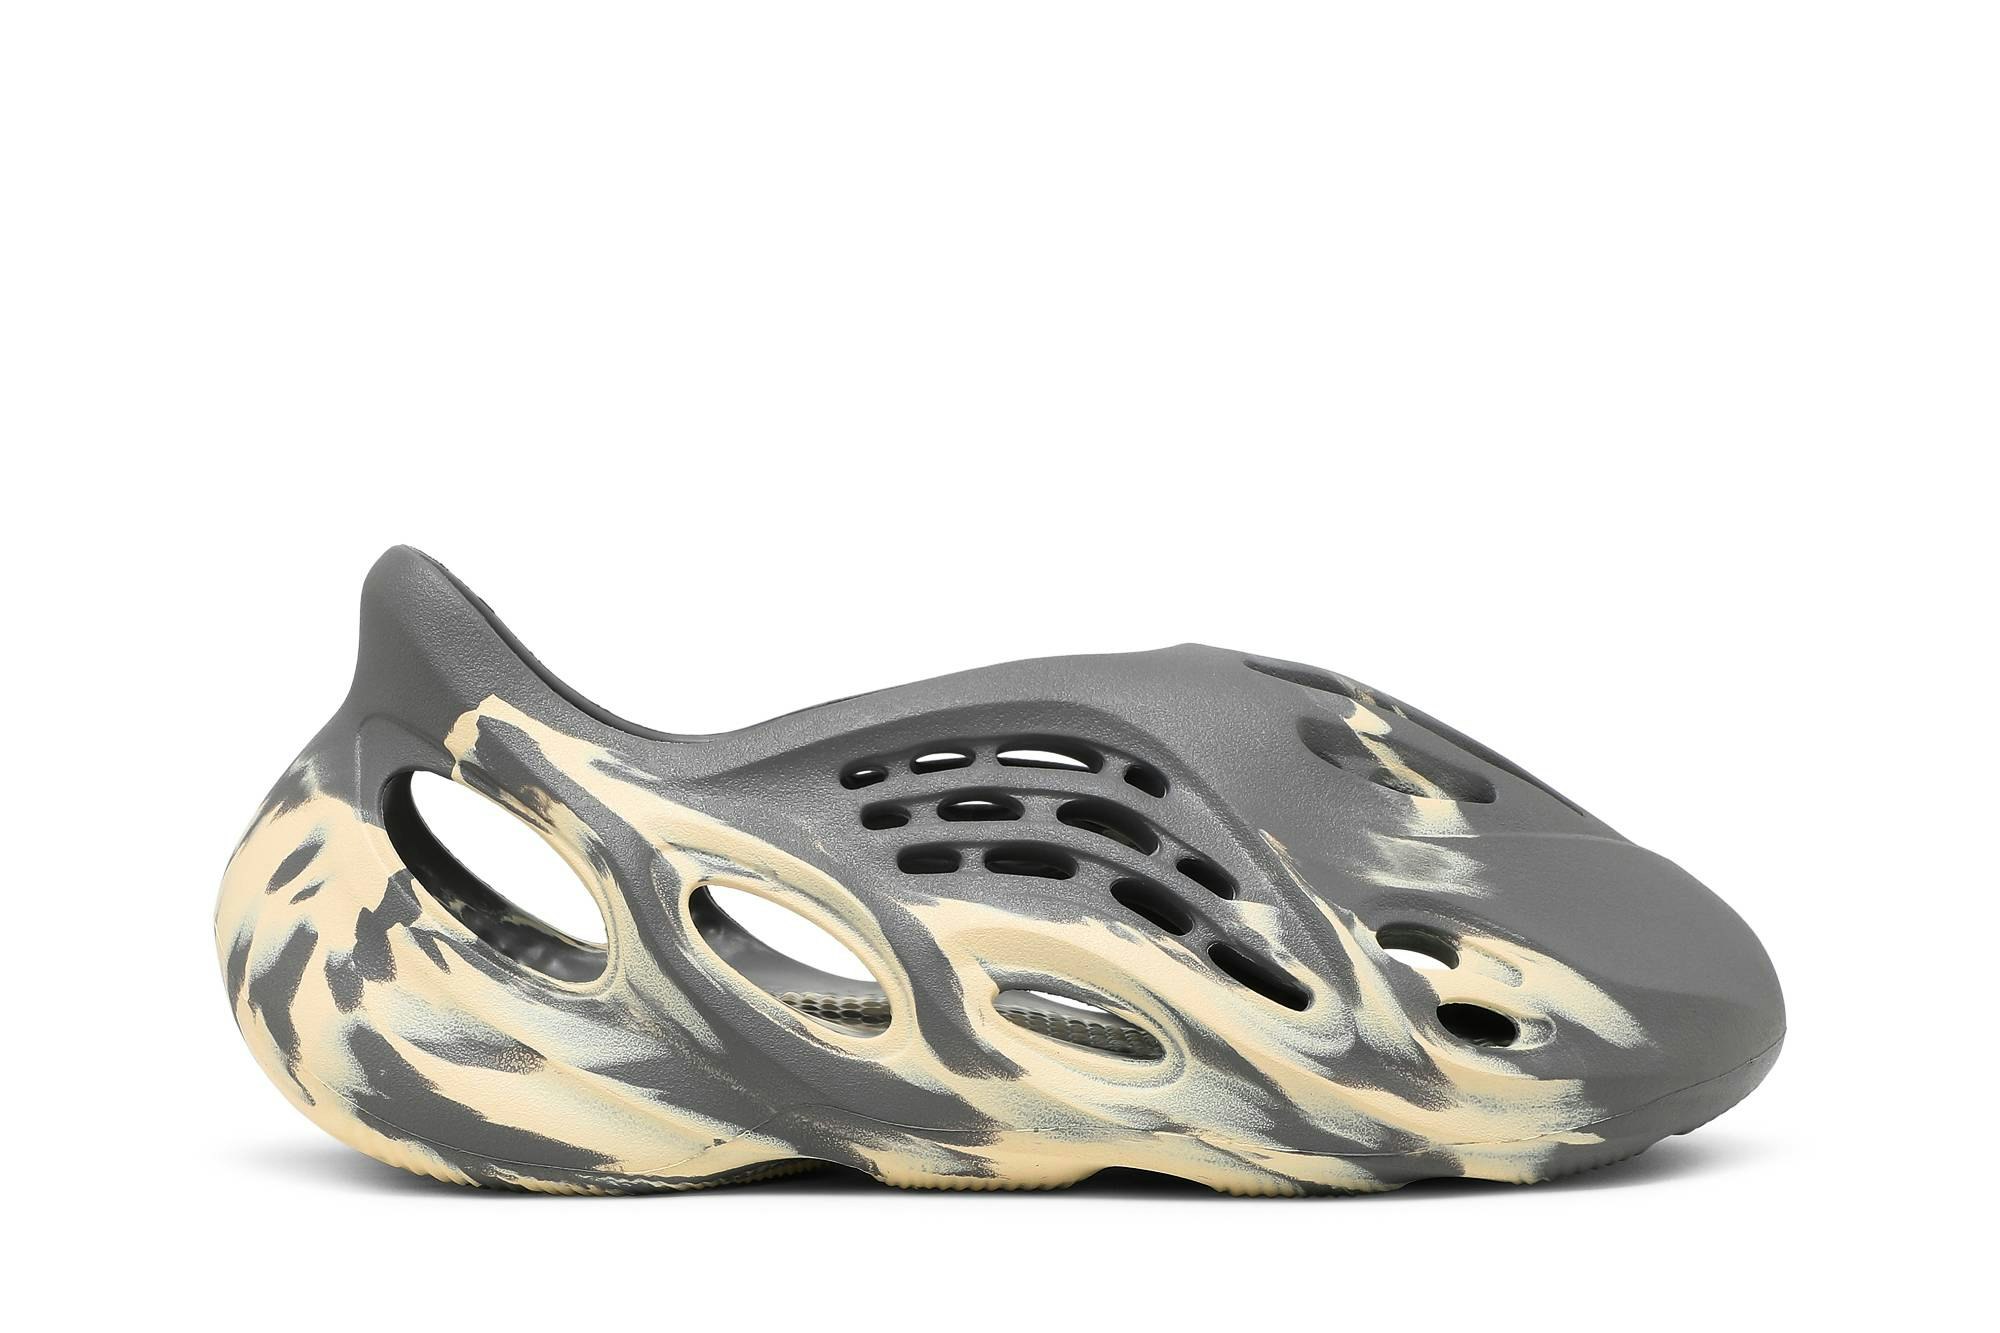 adidas Yeezy Foam Runner 'MXT Moon Grey' - GV7904 - Novelship